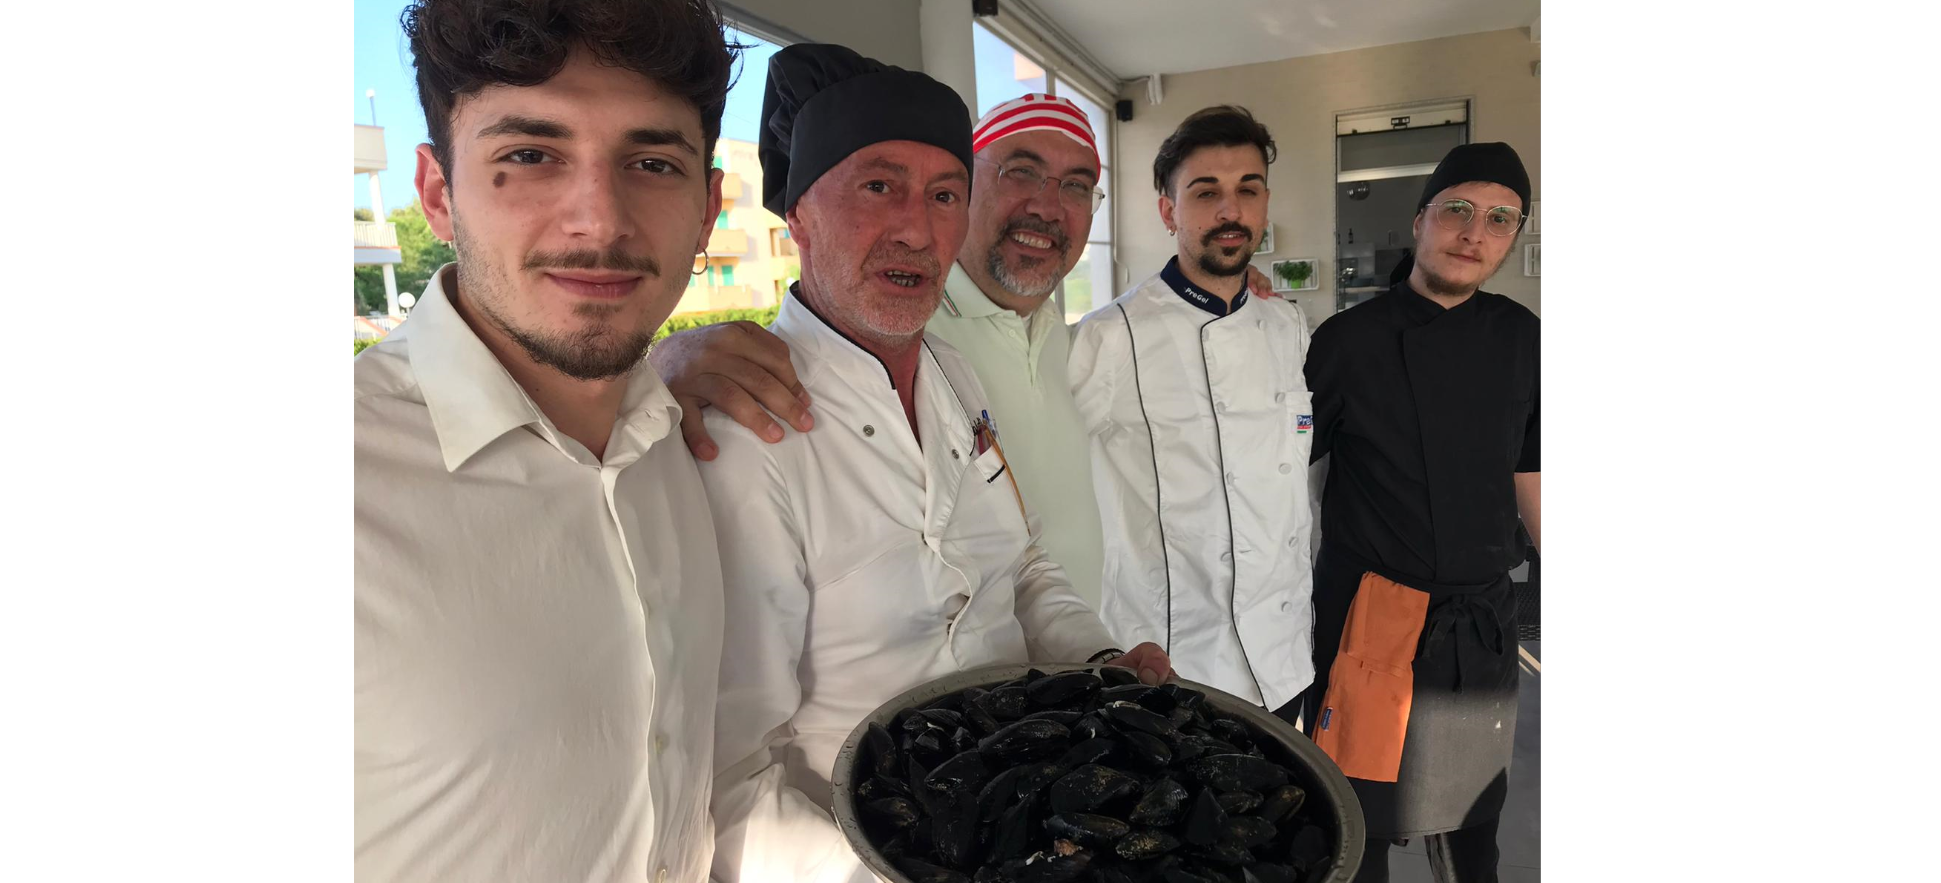 Martino Schiraldi, chef giramondo innamorato della Basilicata: un tocco in più all’Ex Colonia Marina di Metaponto Lido